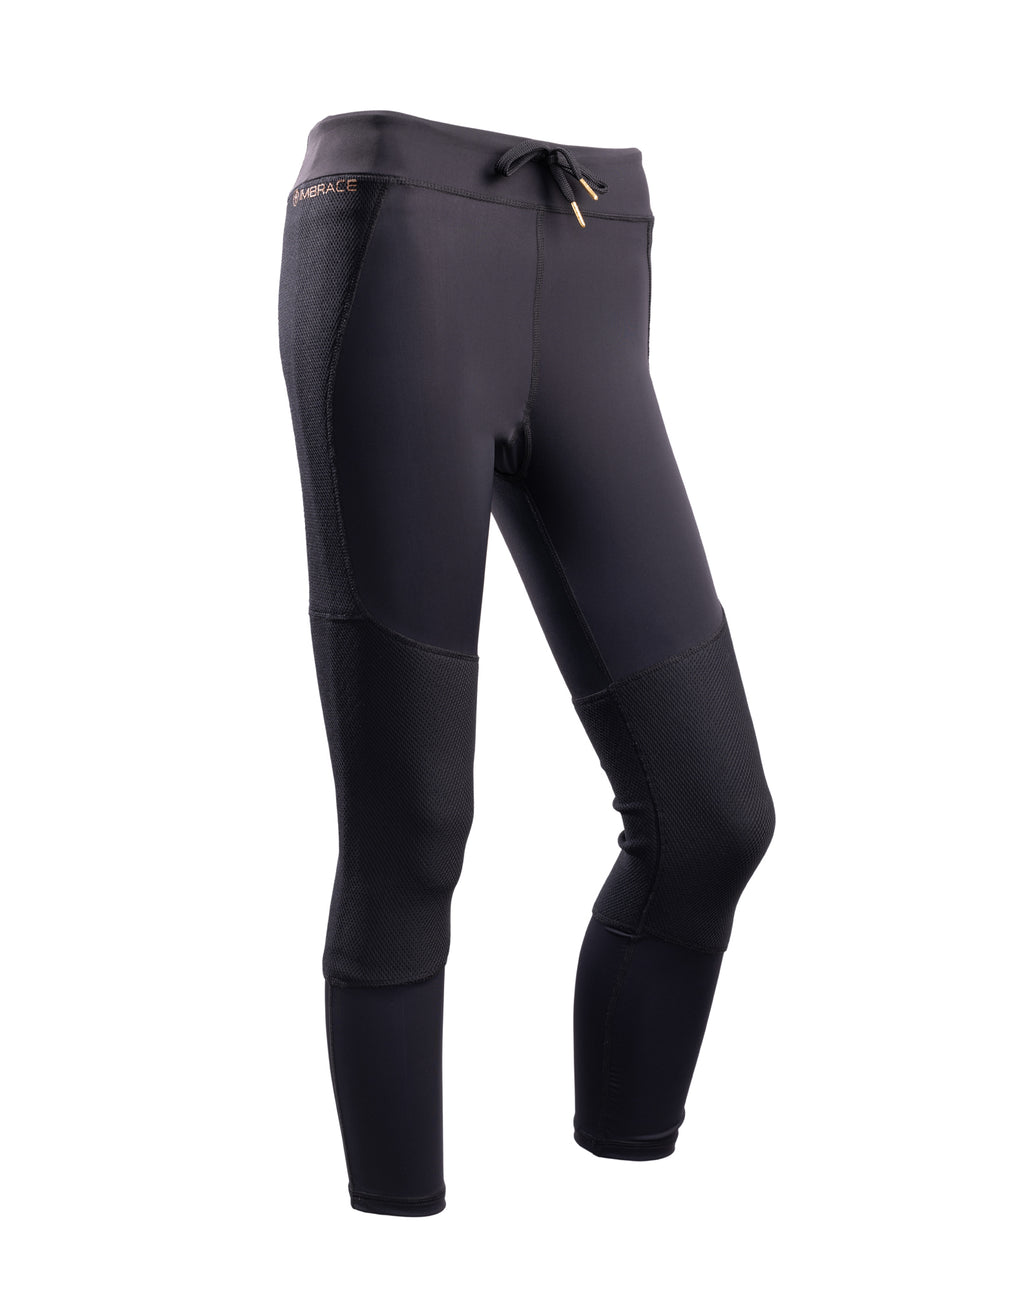 Sport leggings for Women Under Armour Black XS - buy, price